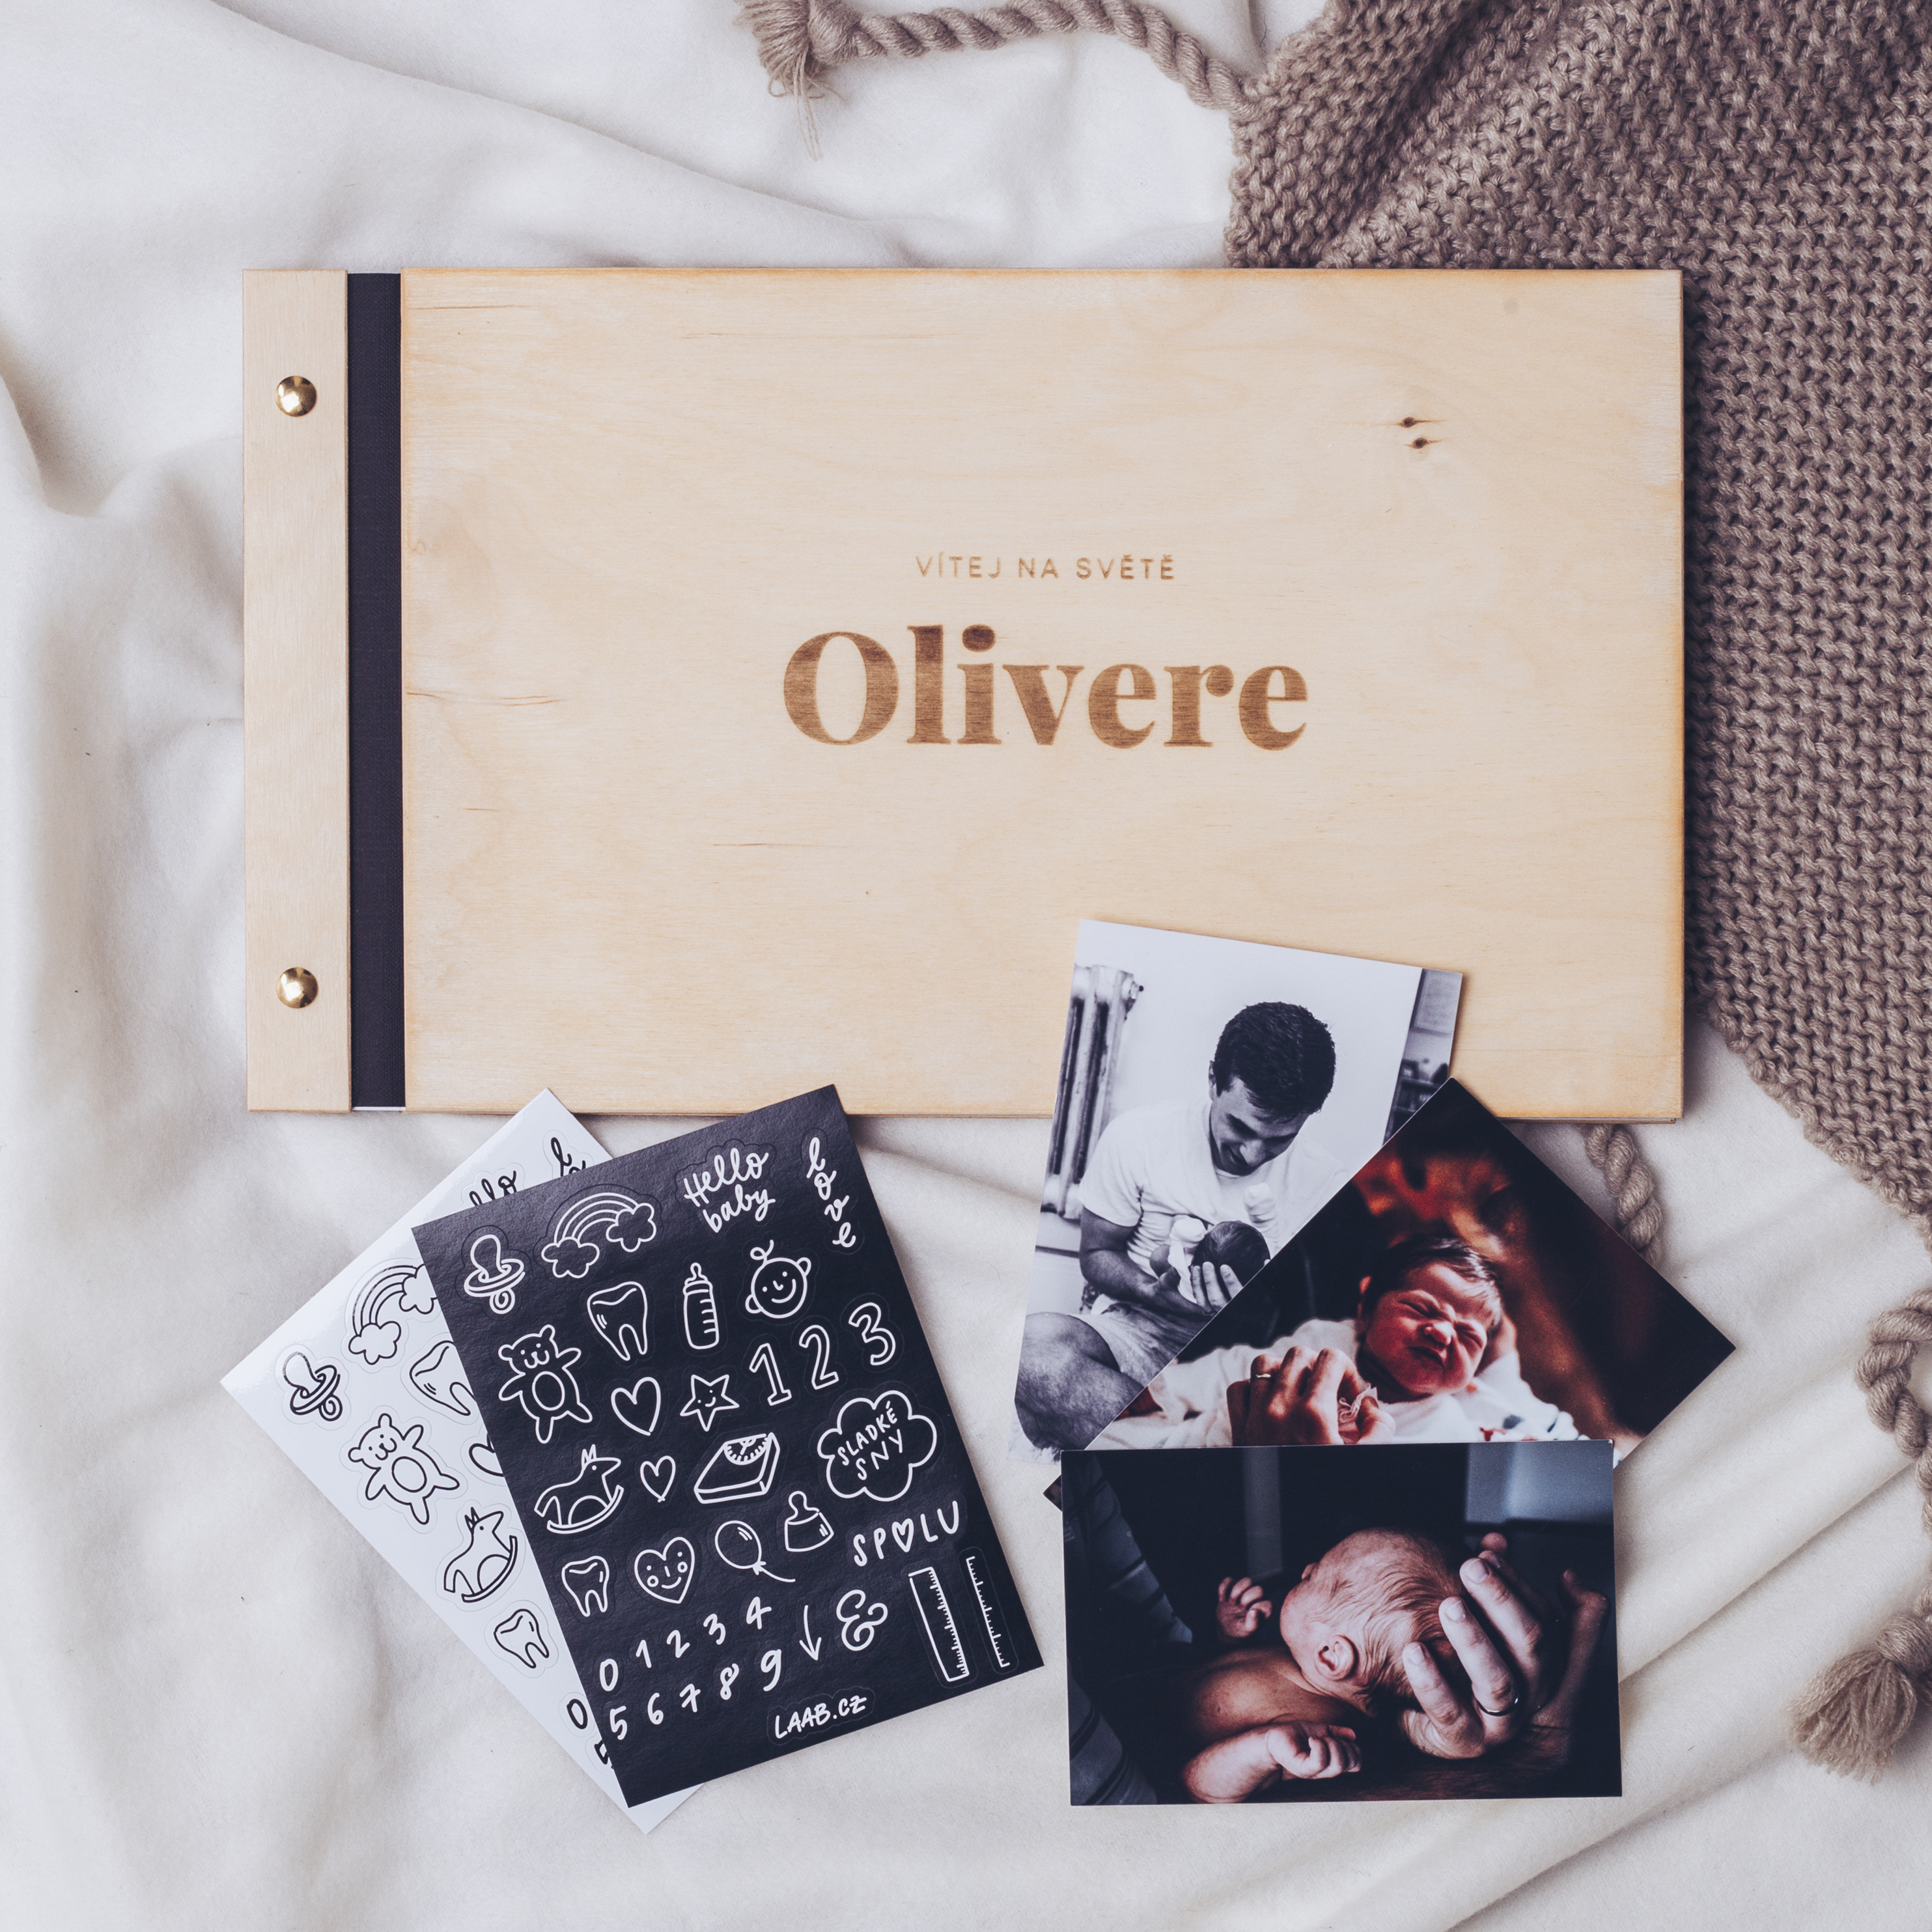 dřevěné fotoalbum Oliver: FORMÁT FOTOALBA na šířku, POČET LISTŮ 40 s prokladovými listy, FORMÁT FOTOALBA na šířku, POČET LISTŮ 35 s prokladovými listy, BARVA LISTŮ bílá